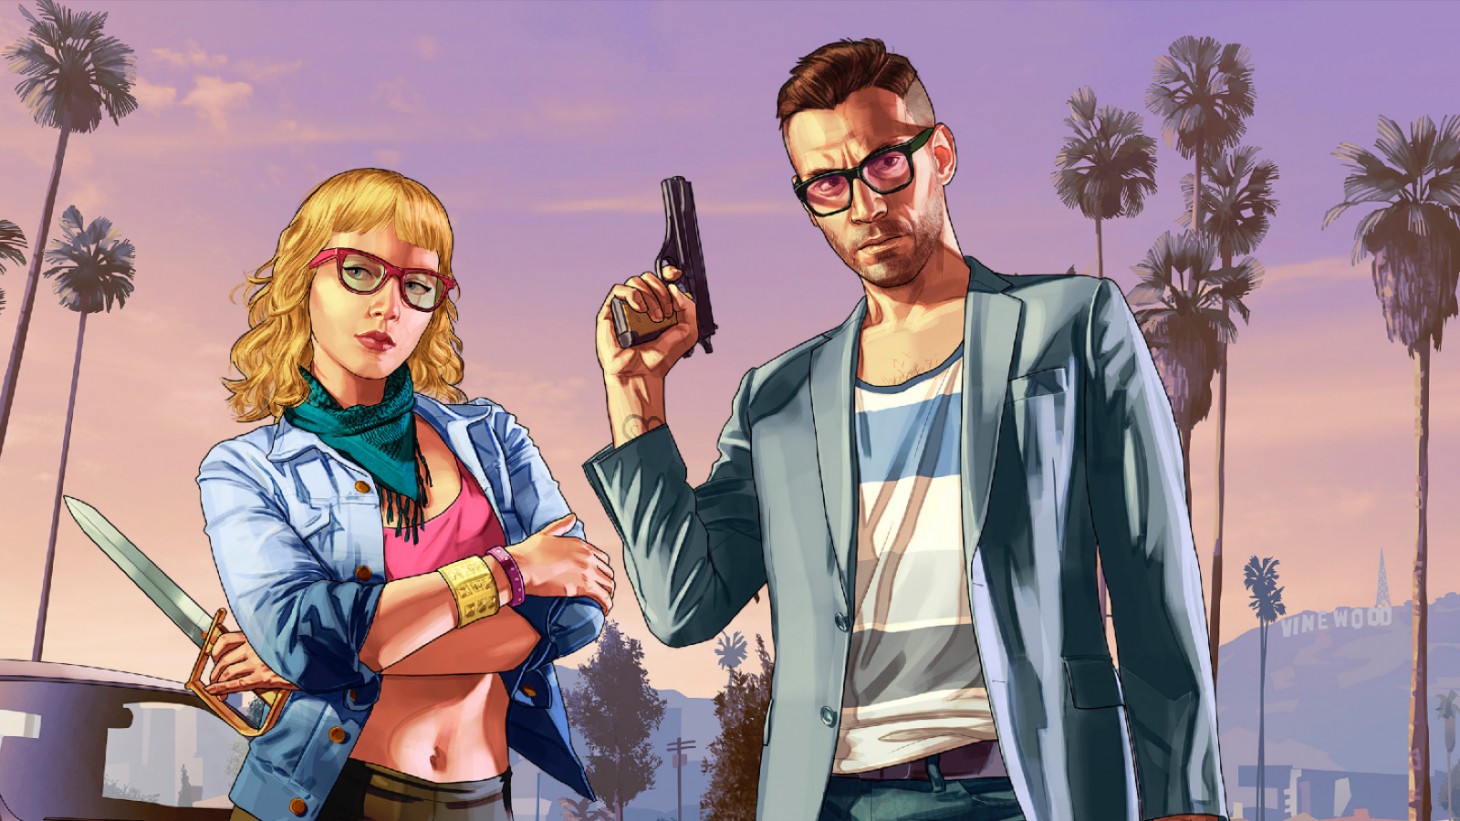 Rockstar veröffentlicht nächsten Monat den ersten Trailer zu Grand Theft Auto 6